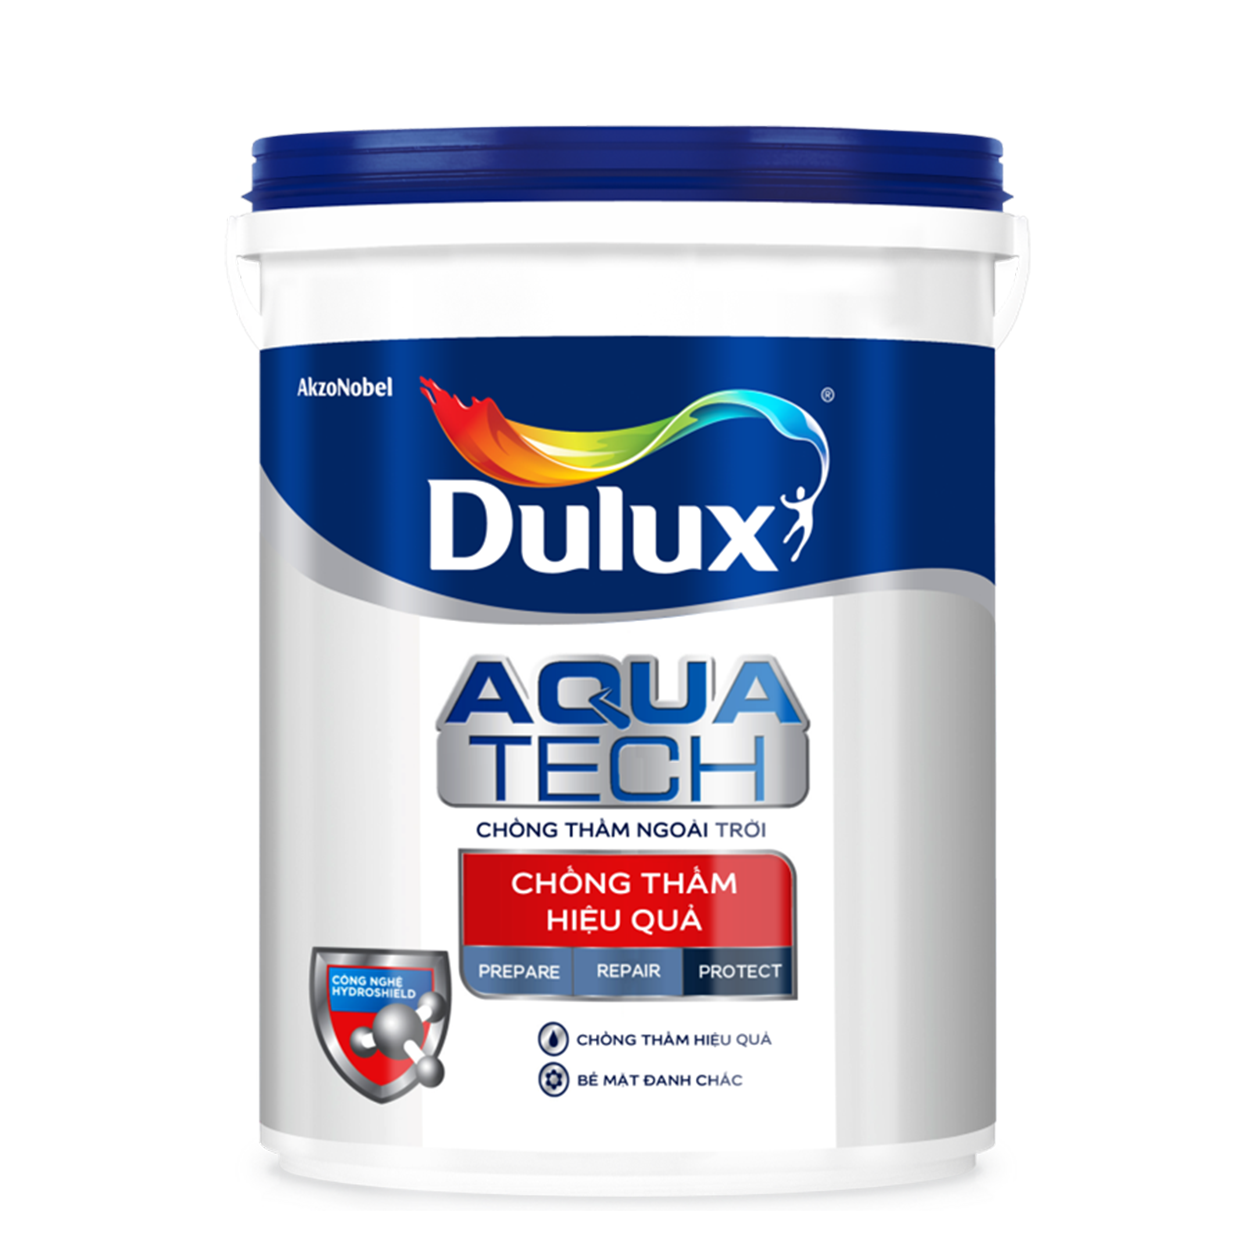 Chất Chống Thấm Dulux Aquatech C8033 là sản phẩm lý tưởng cho việc bảo vệ các bề mặt dưới nước của bạn. Với khả năng chống thấm tuyệt vời, sản phẩm này không chỉ giữ cho bề mặt nhà bạn khô ráo mà còn đảm bảo rằng không có sự ăn mòn hoặc tác động tiêu cực từ môi trường bên ngoài.